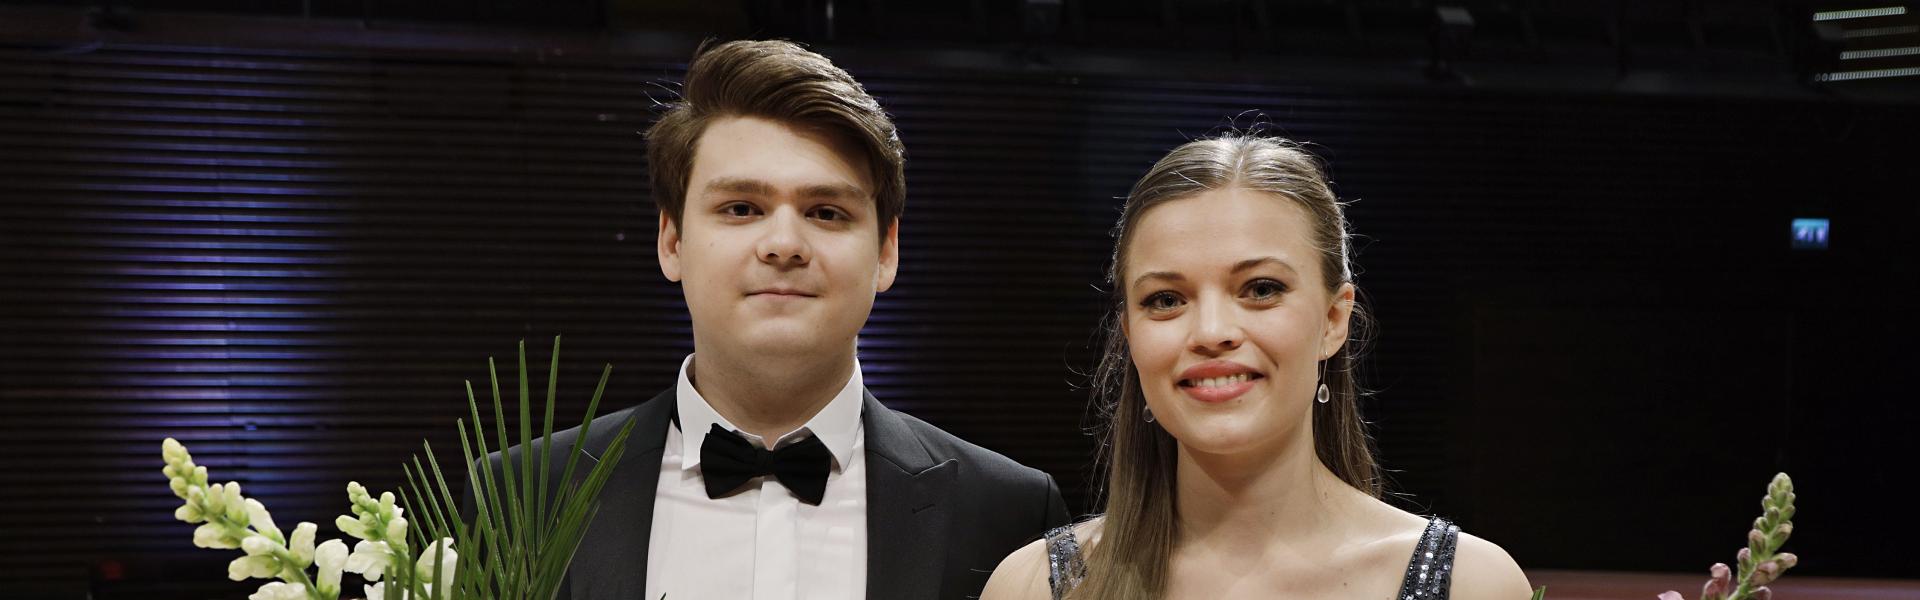 Kansainvälisen Mirjam Helin -laulukilpailun voittajat 2019